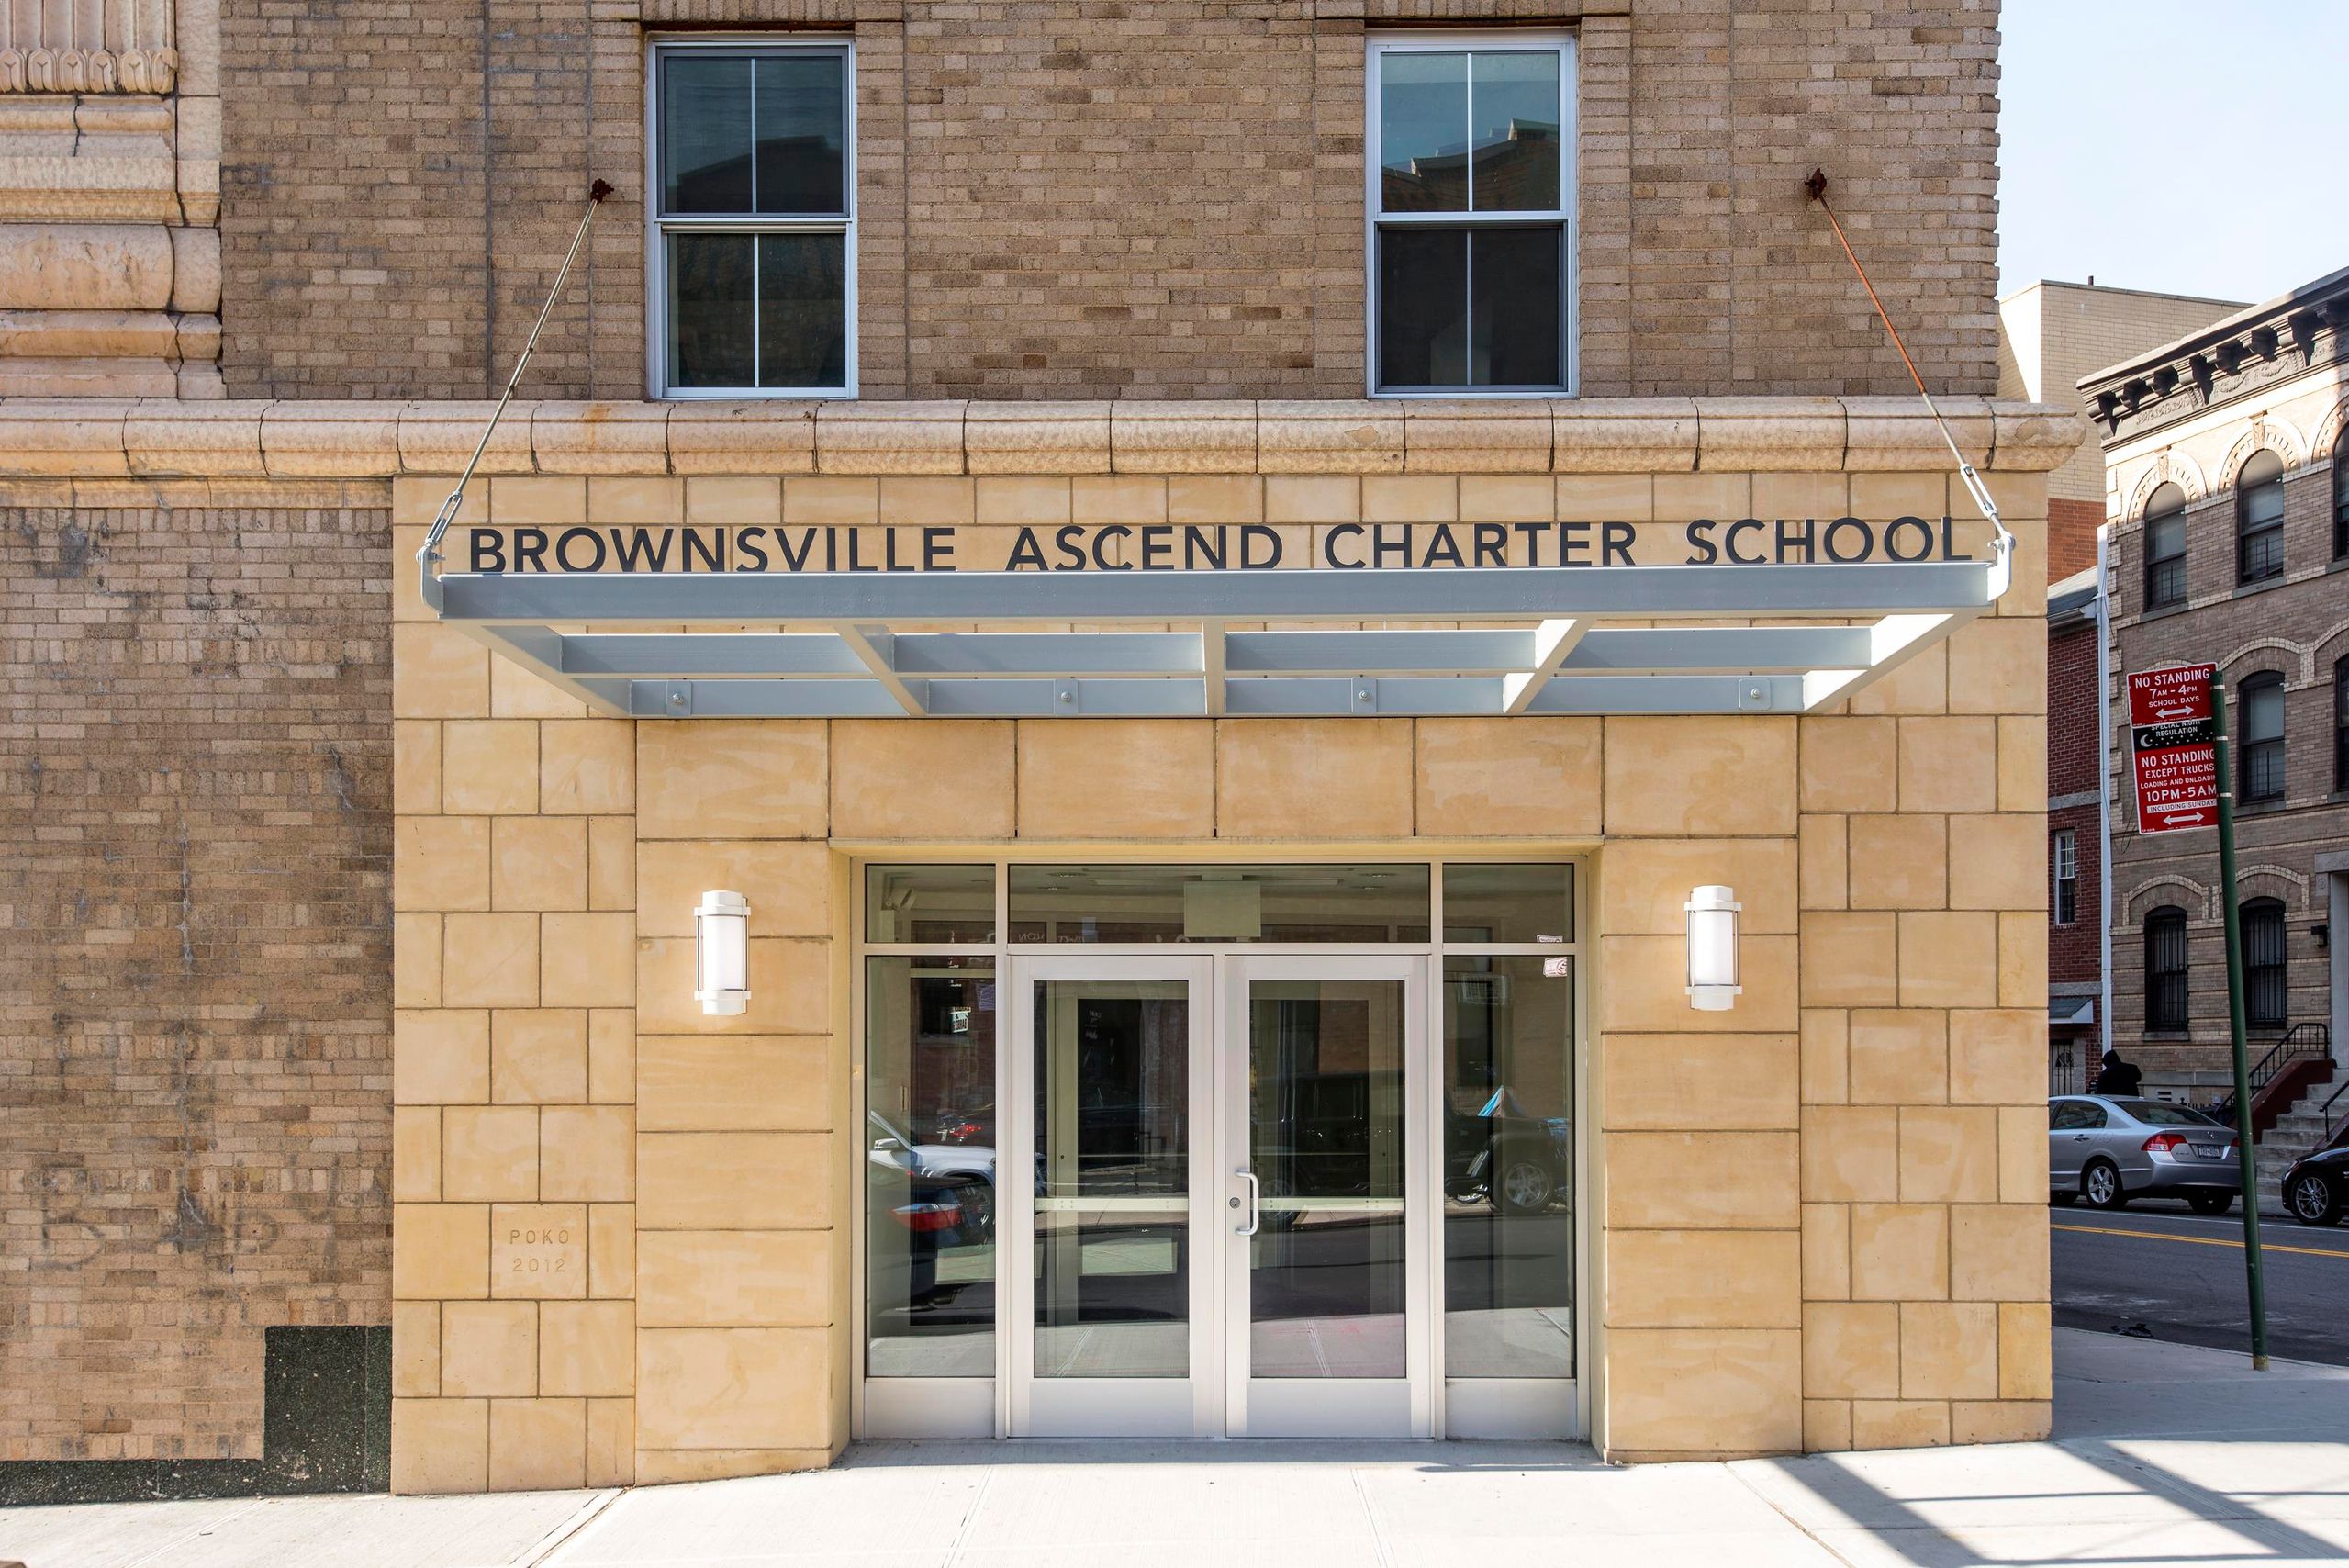 Public Charter Elementary School in Brownsville, Brooklyn Ascend